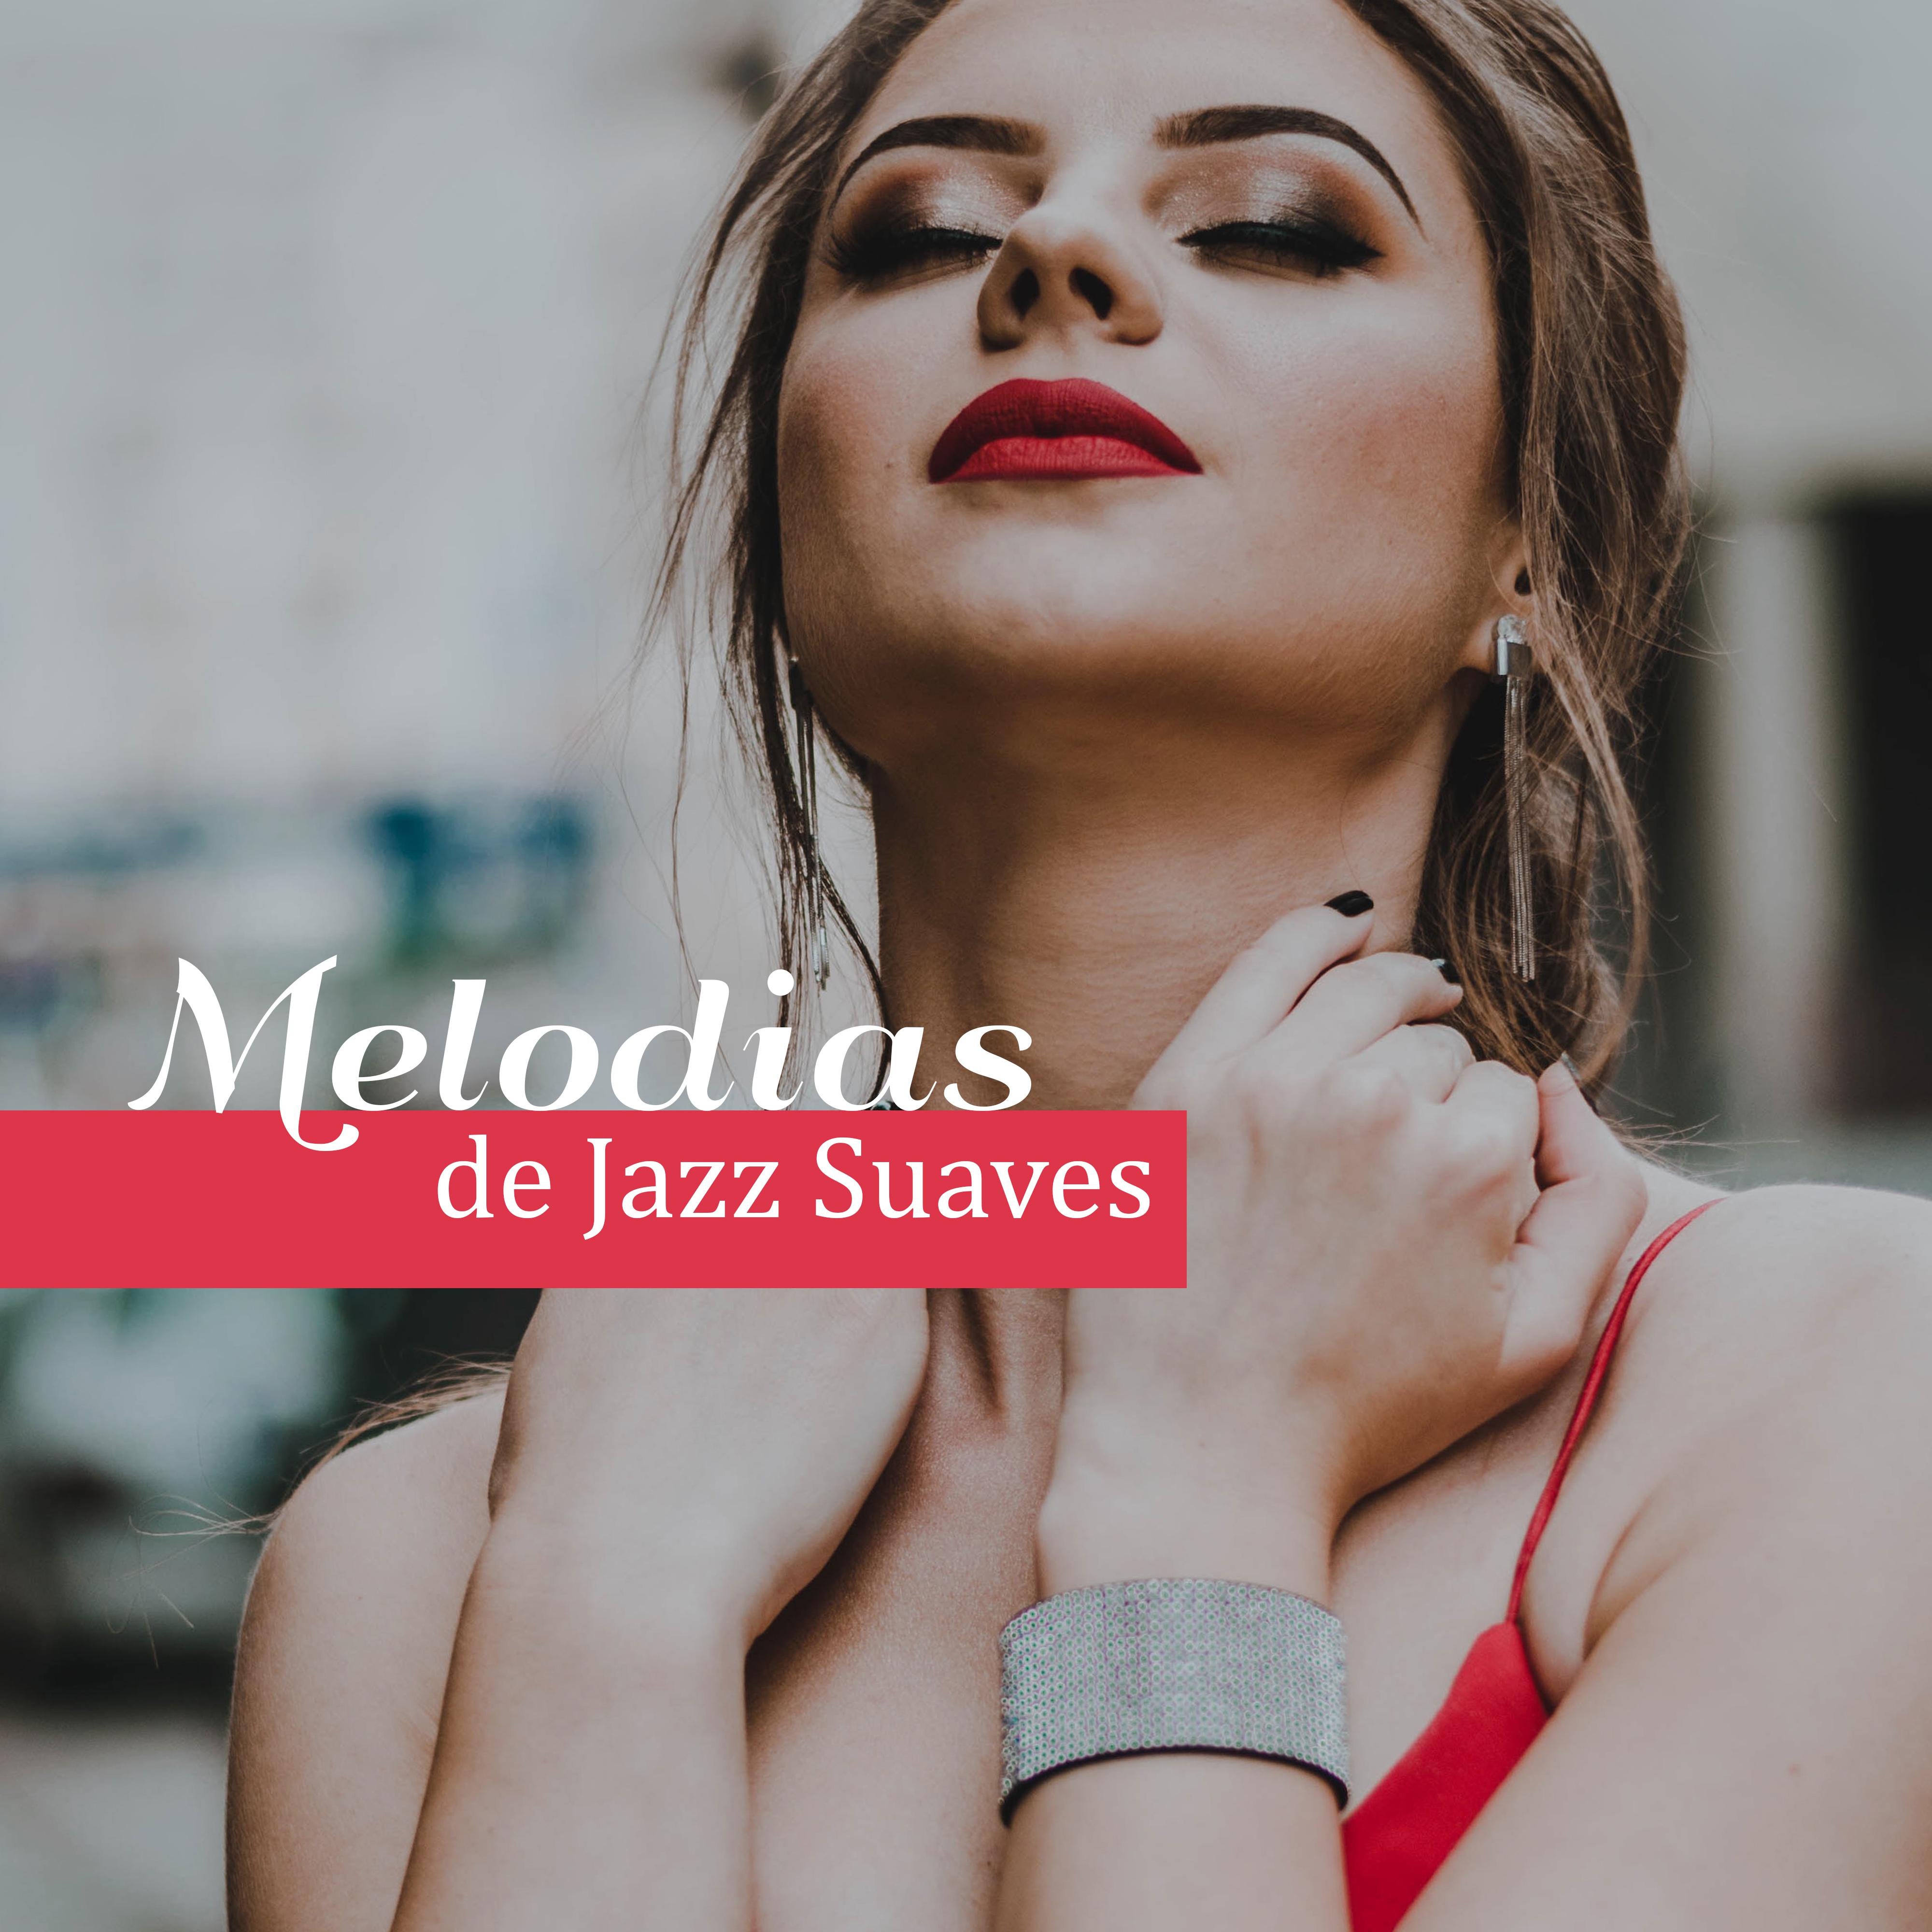 Melodias de Jazz Suaves